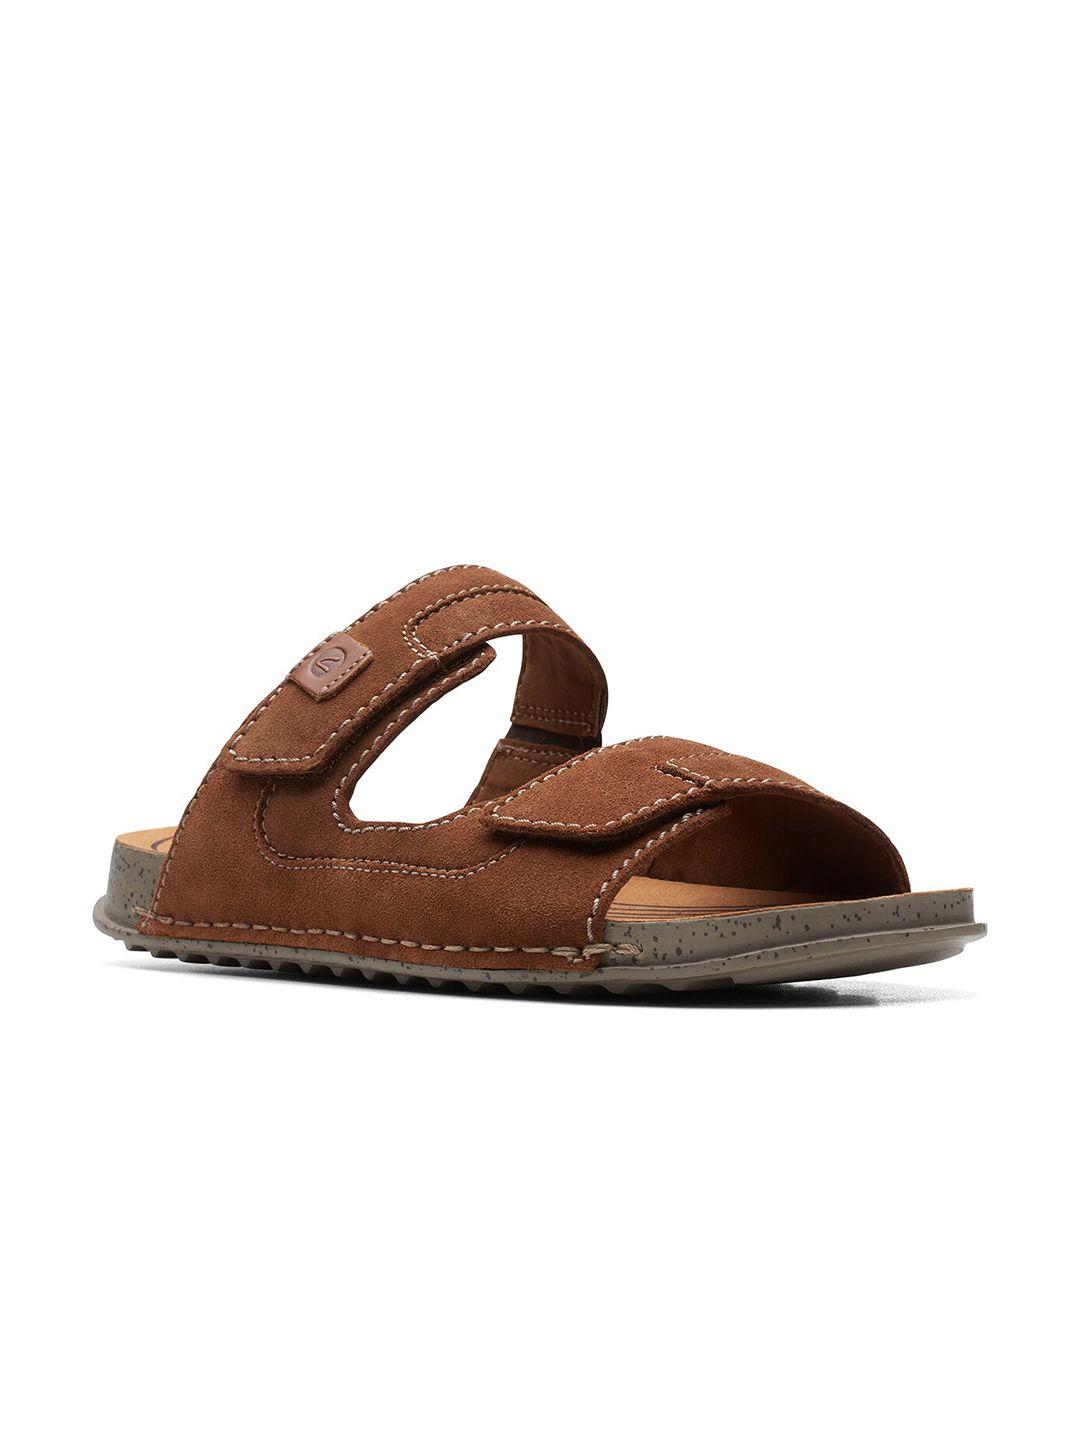 clarks men leather comfort velcro sandals